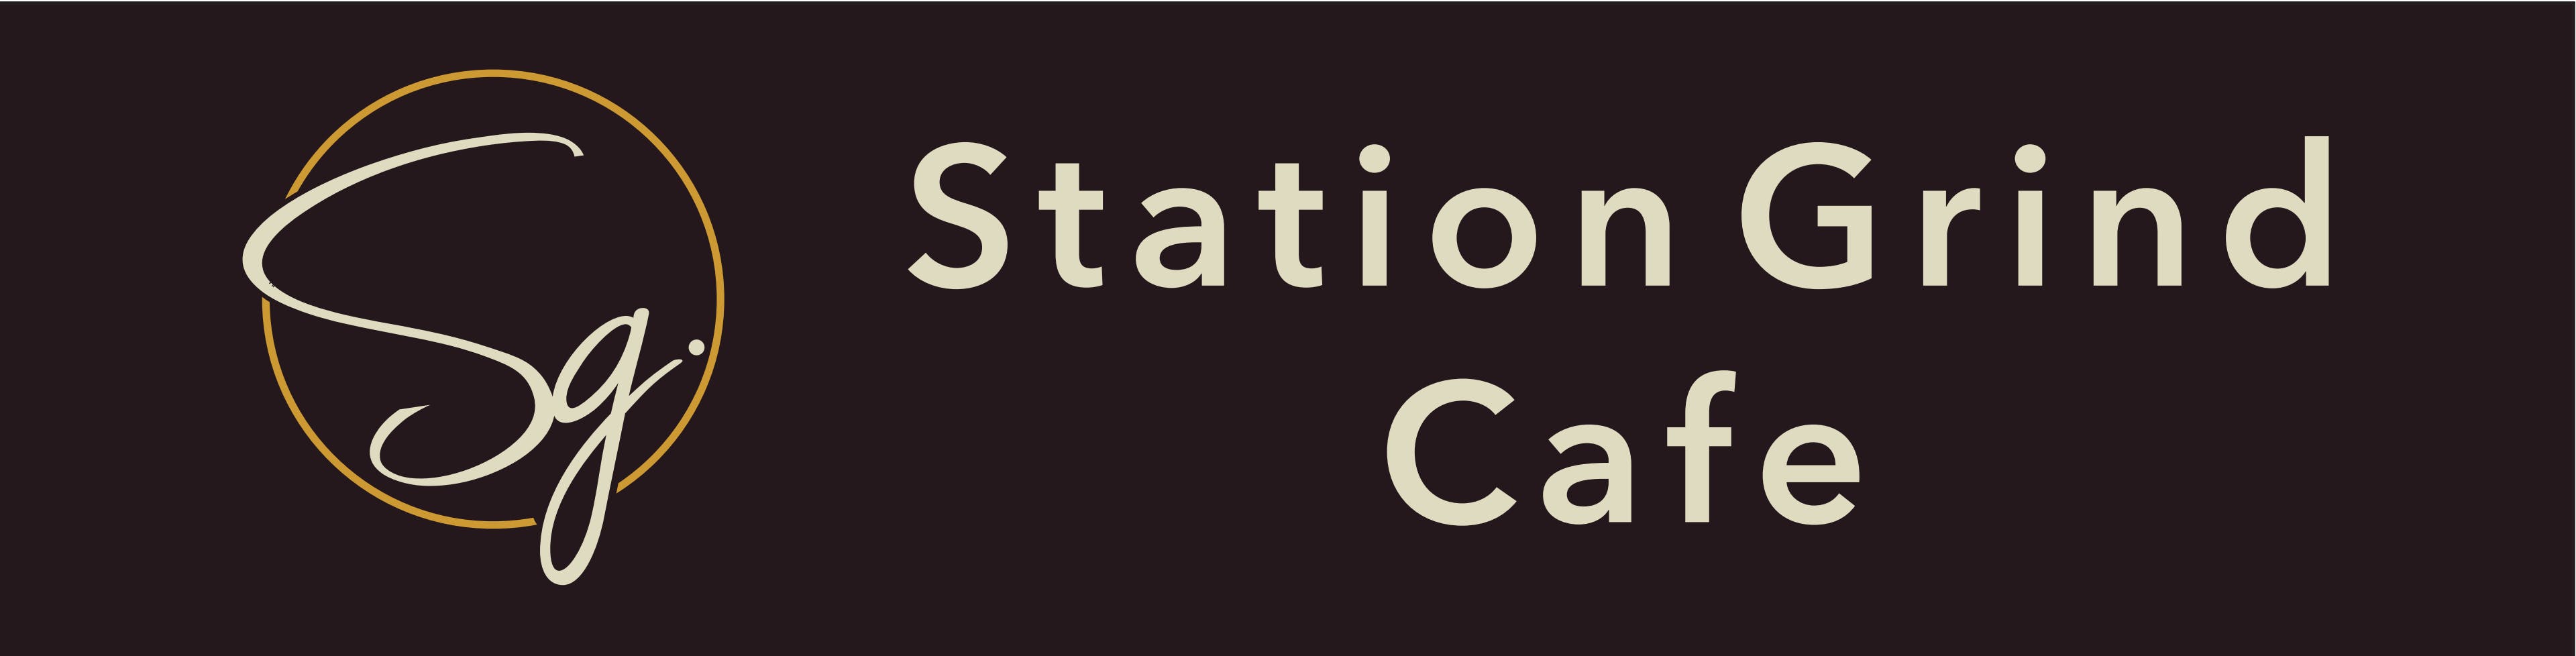 Station Grind Café